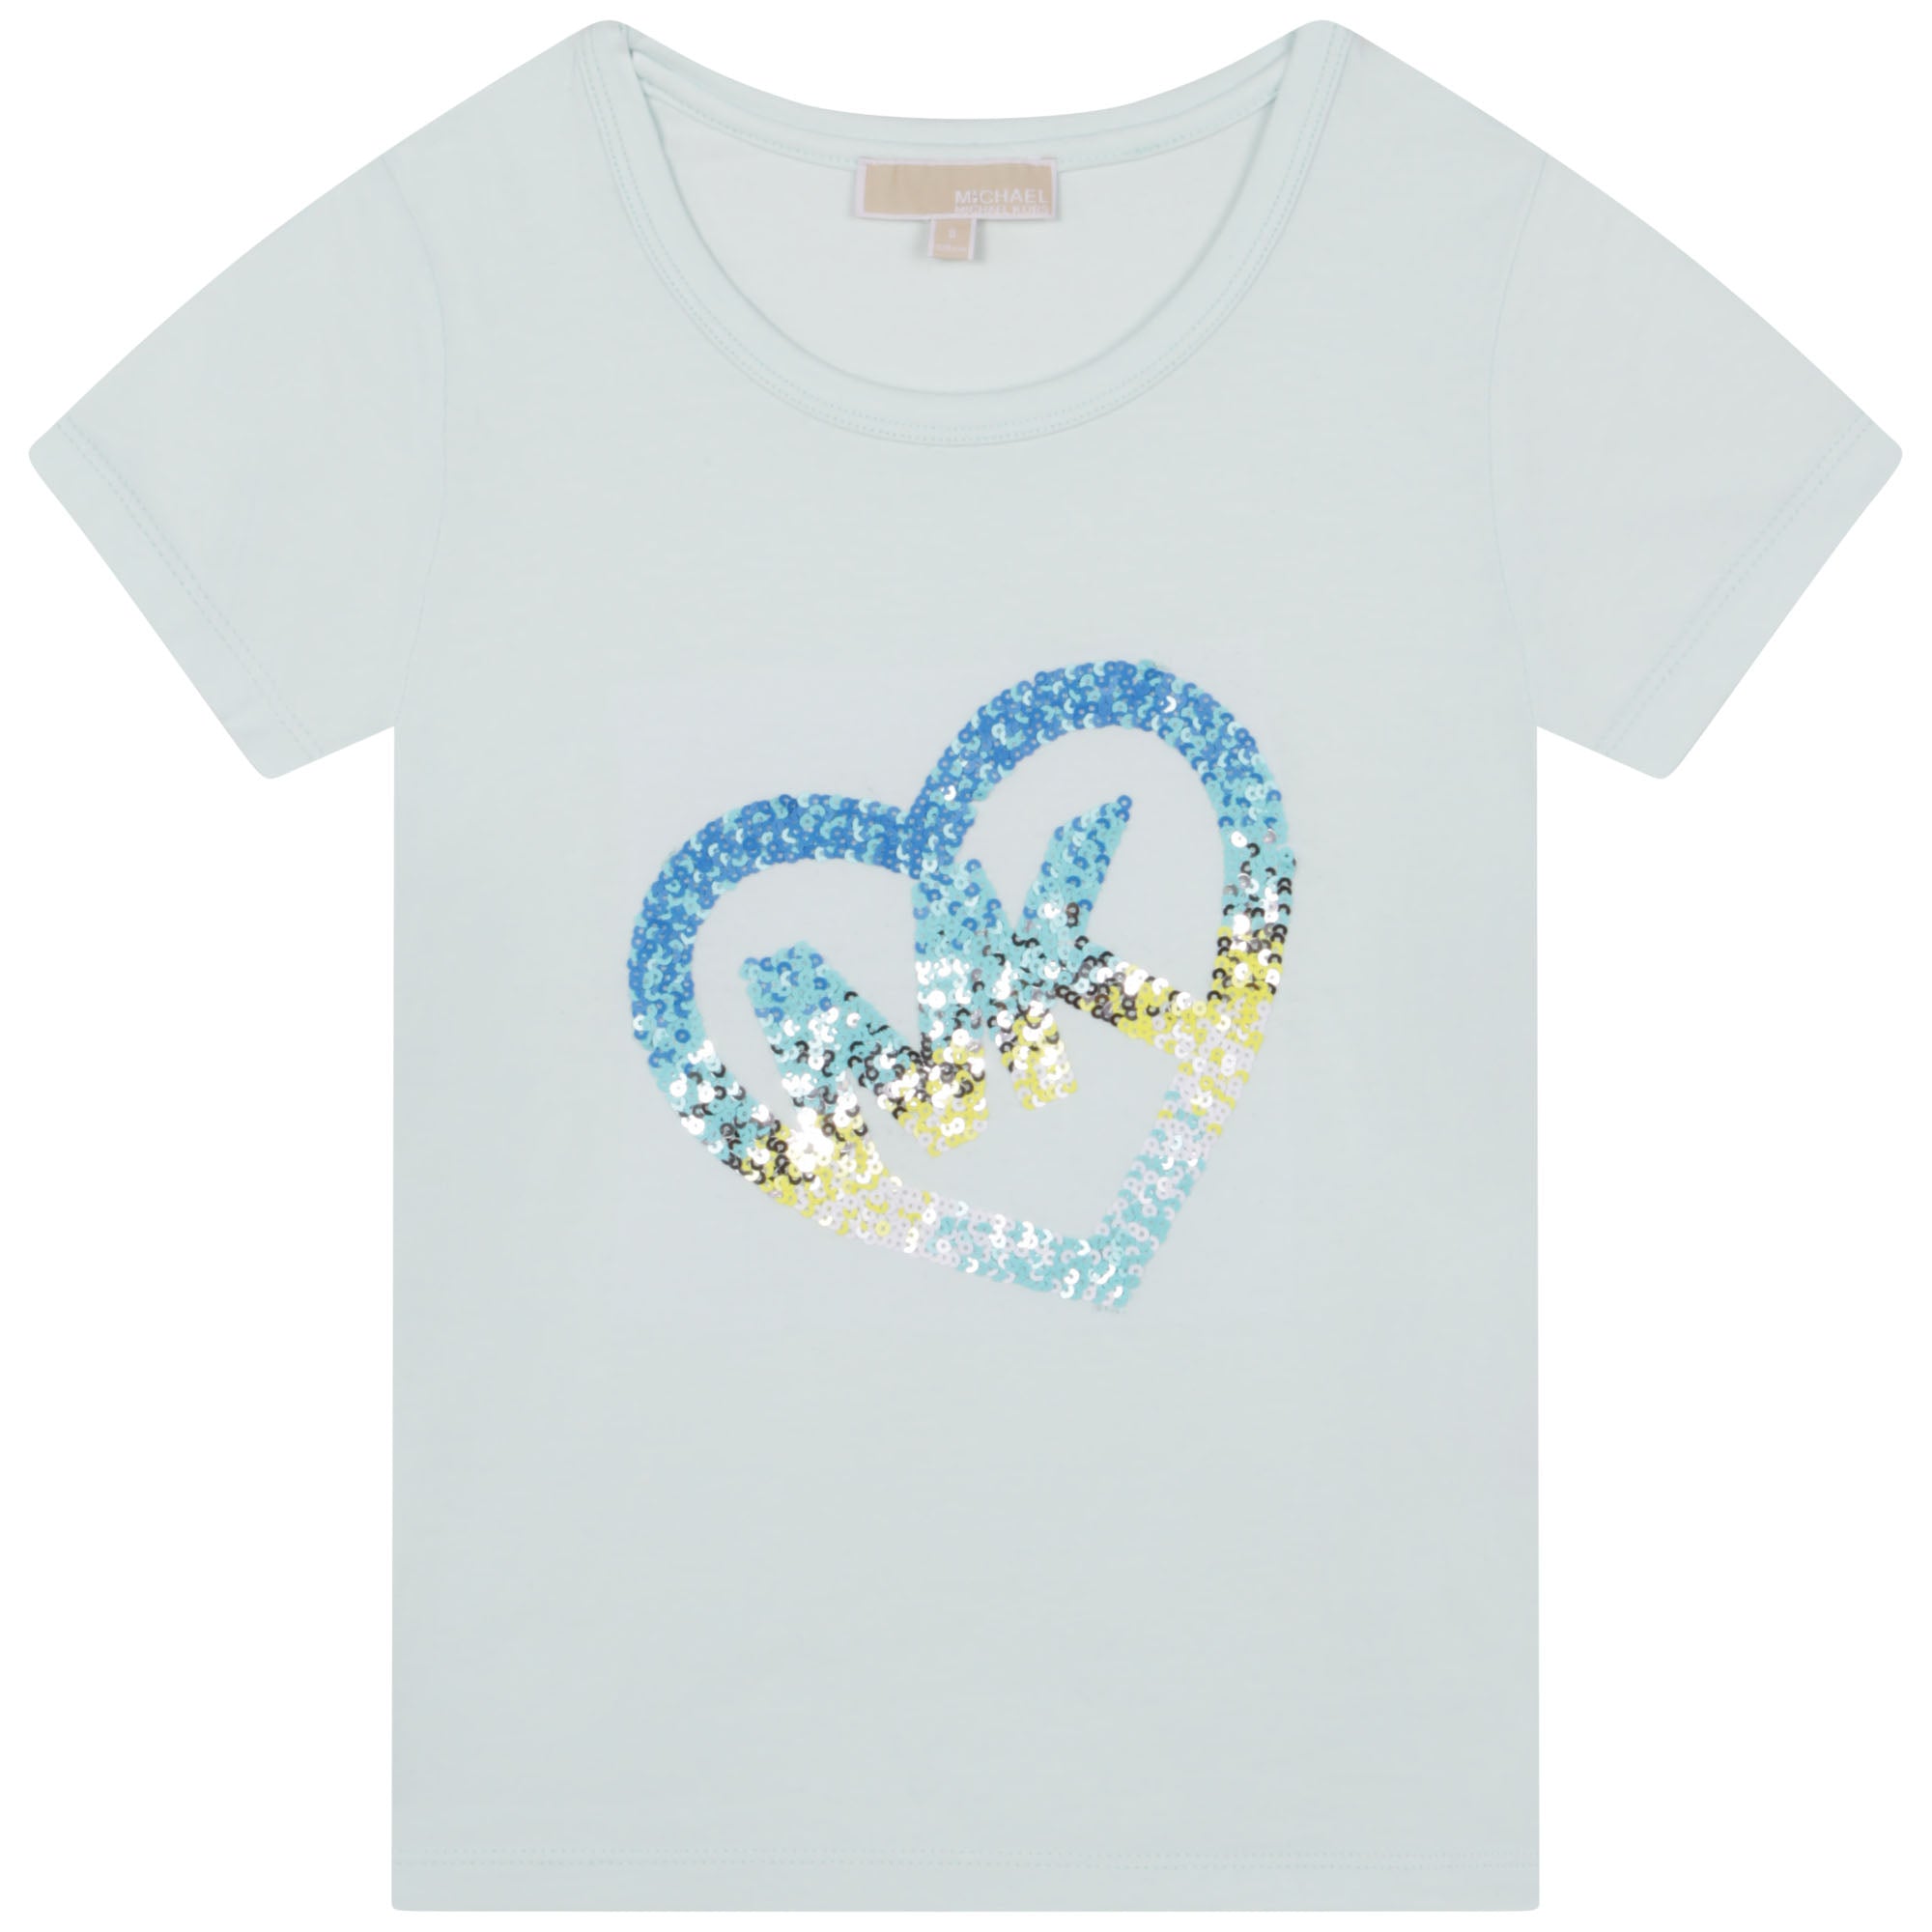 Michael Kors Blue MK Heart T-Shirt